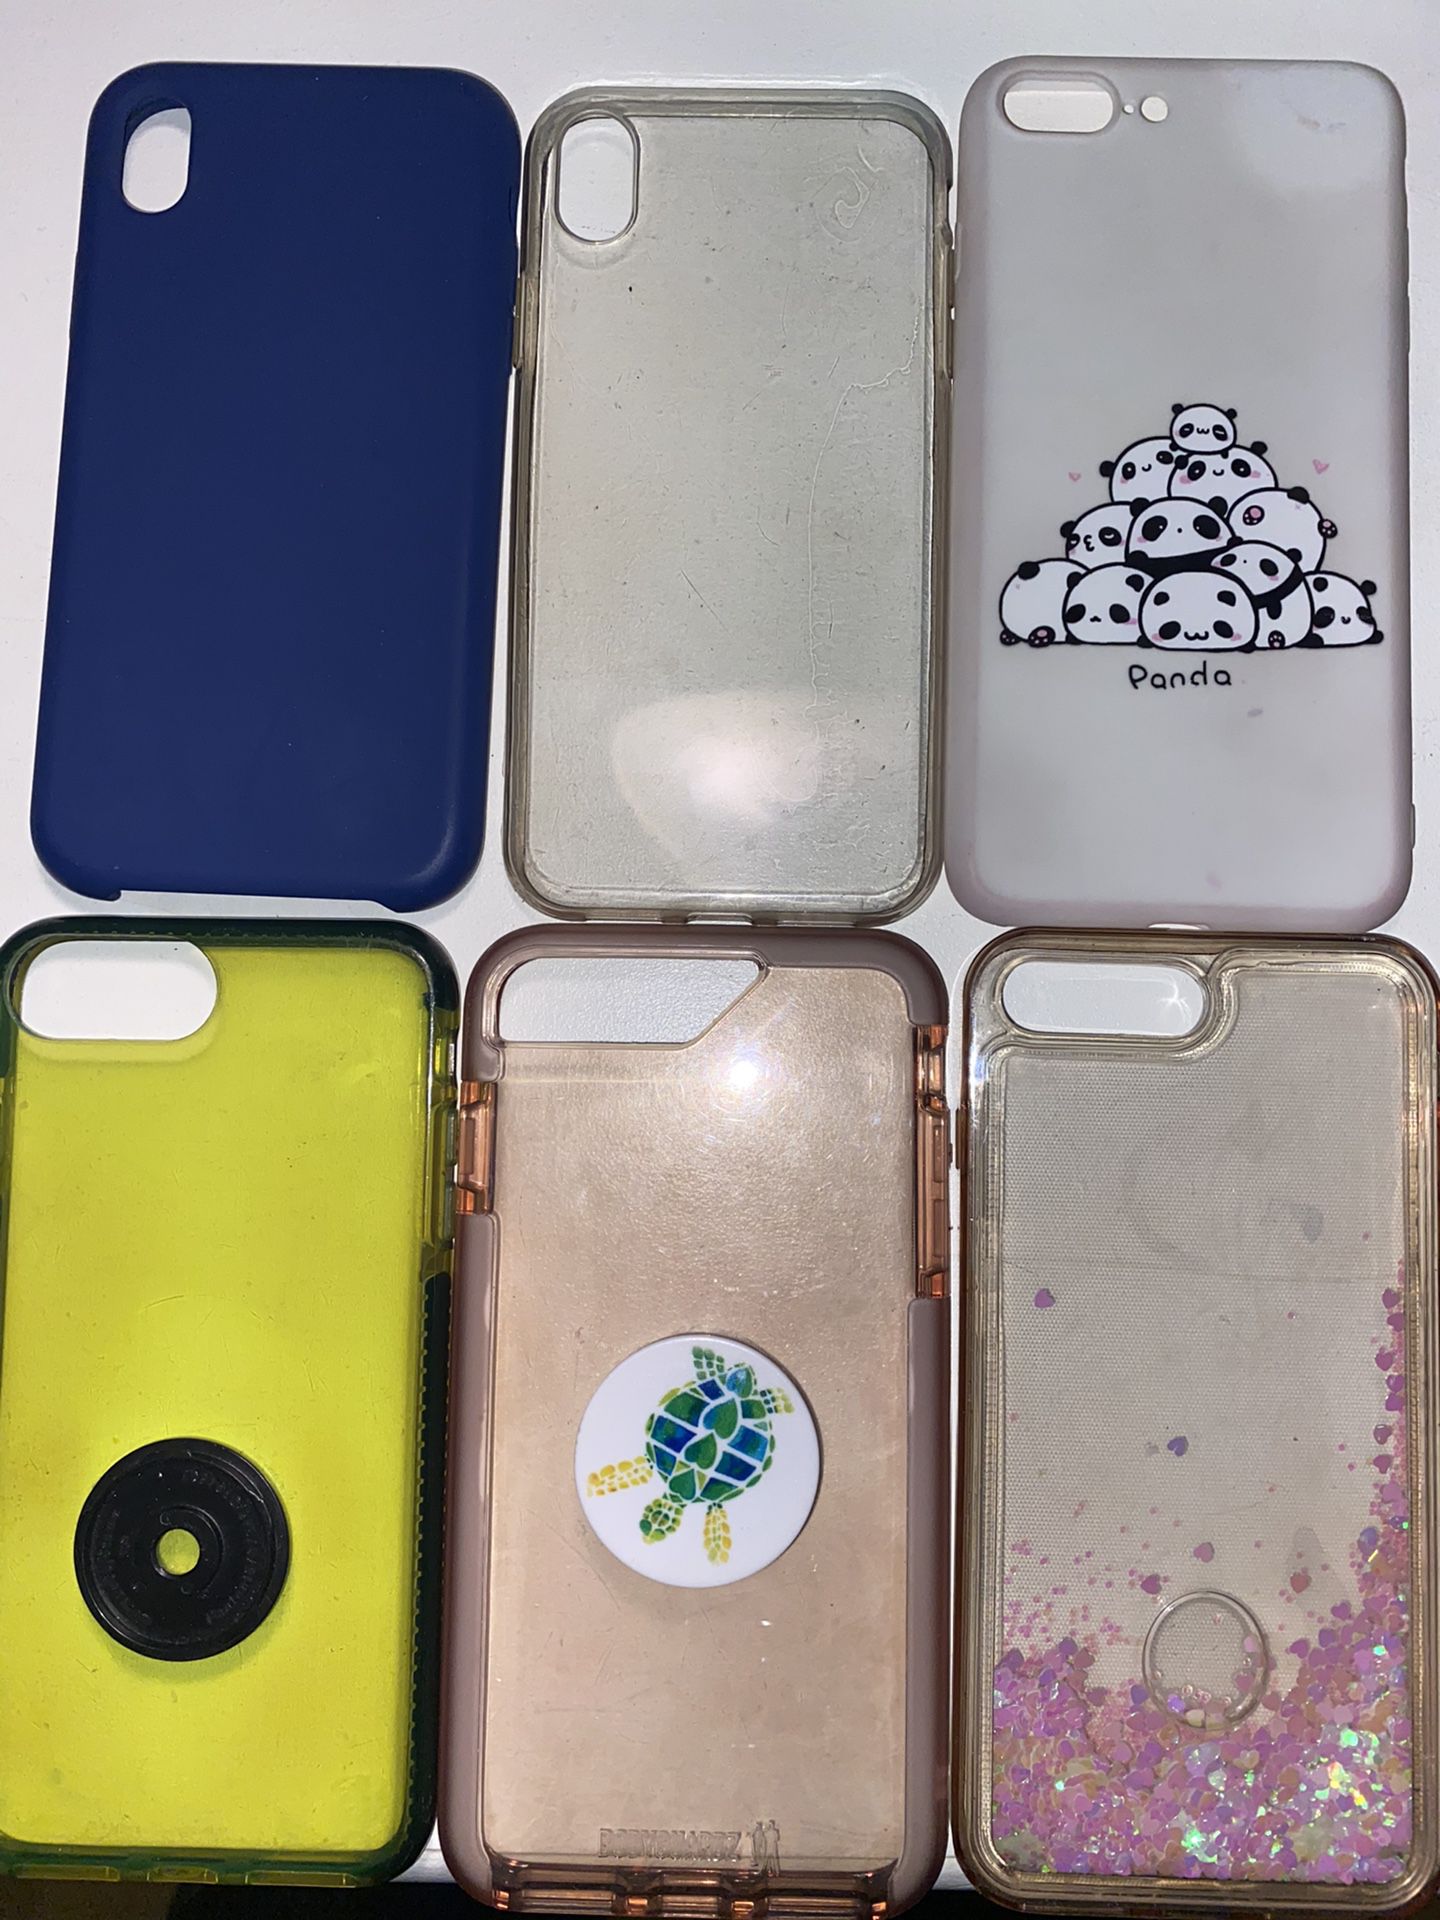 iPhone 8 Plus Cases & iPhone 10 xr